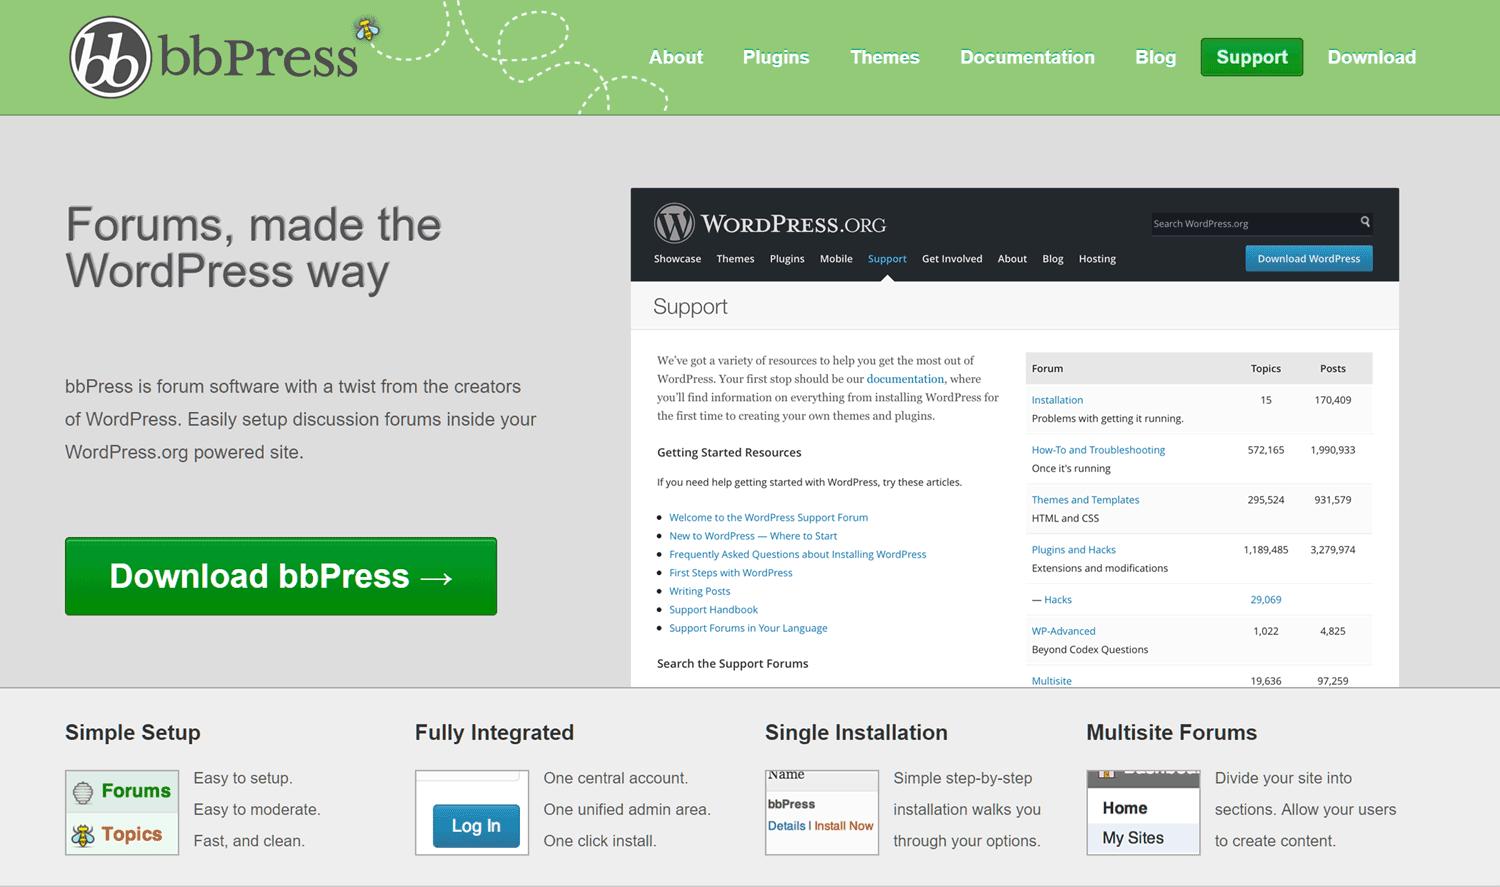 bbPress WordPress Plugin